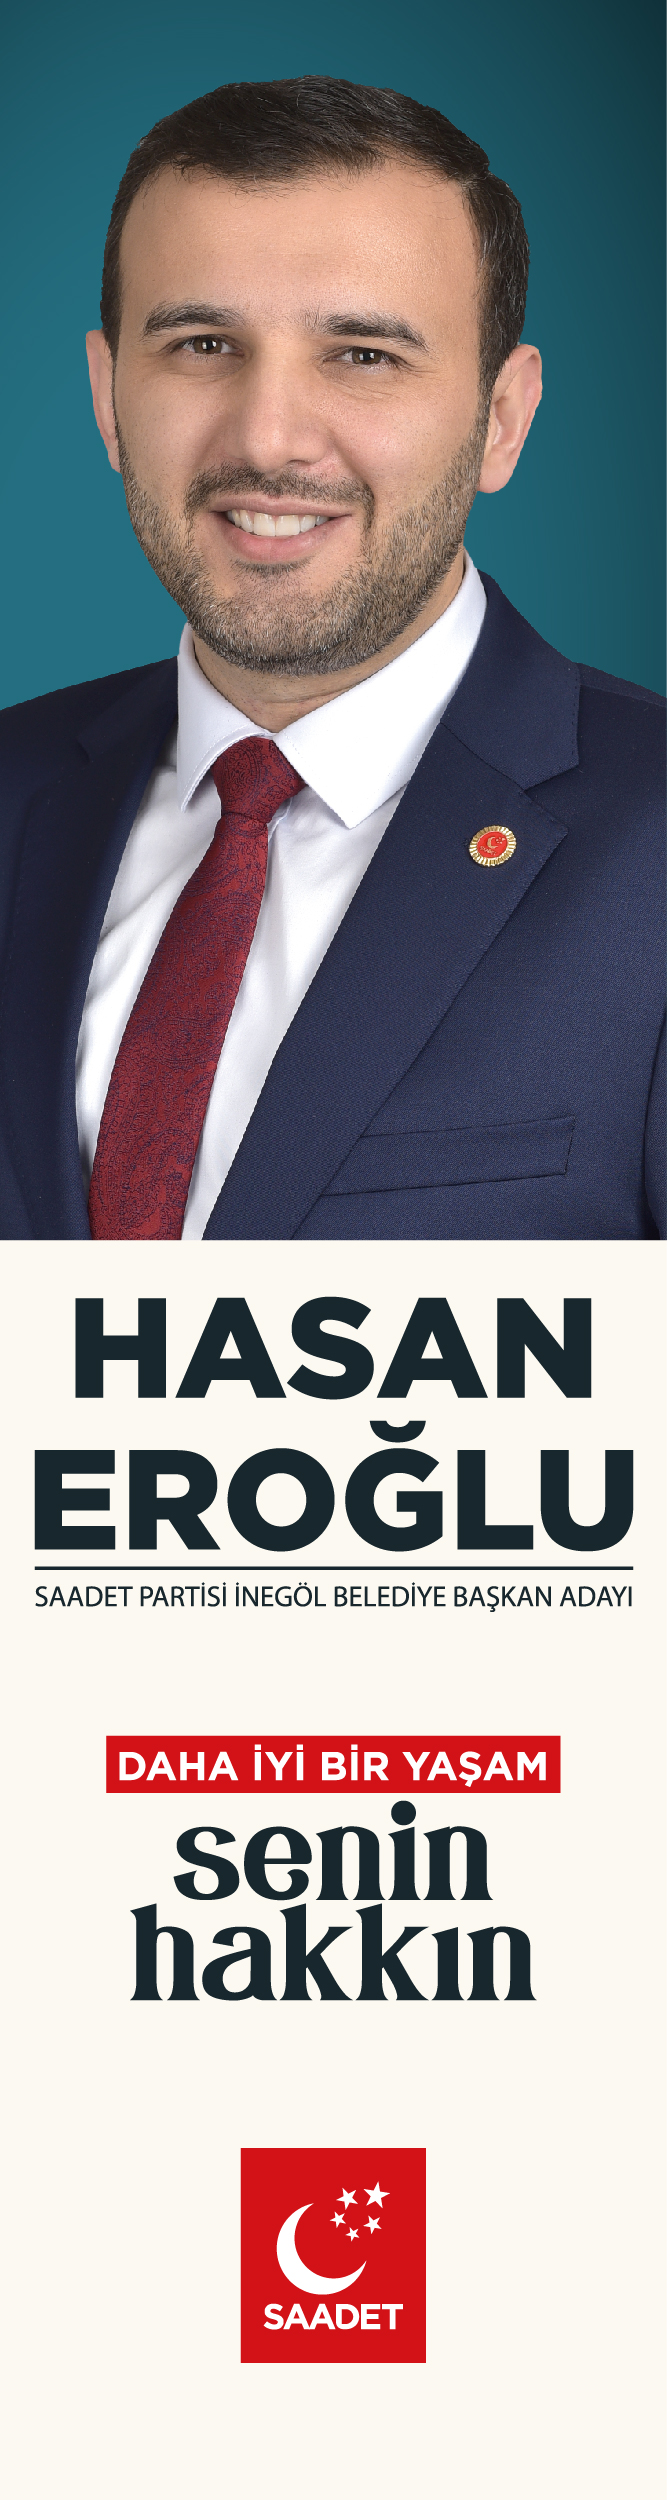 Hasan Eroğlu